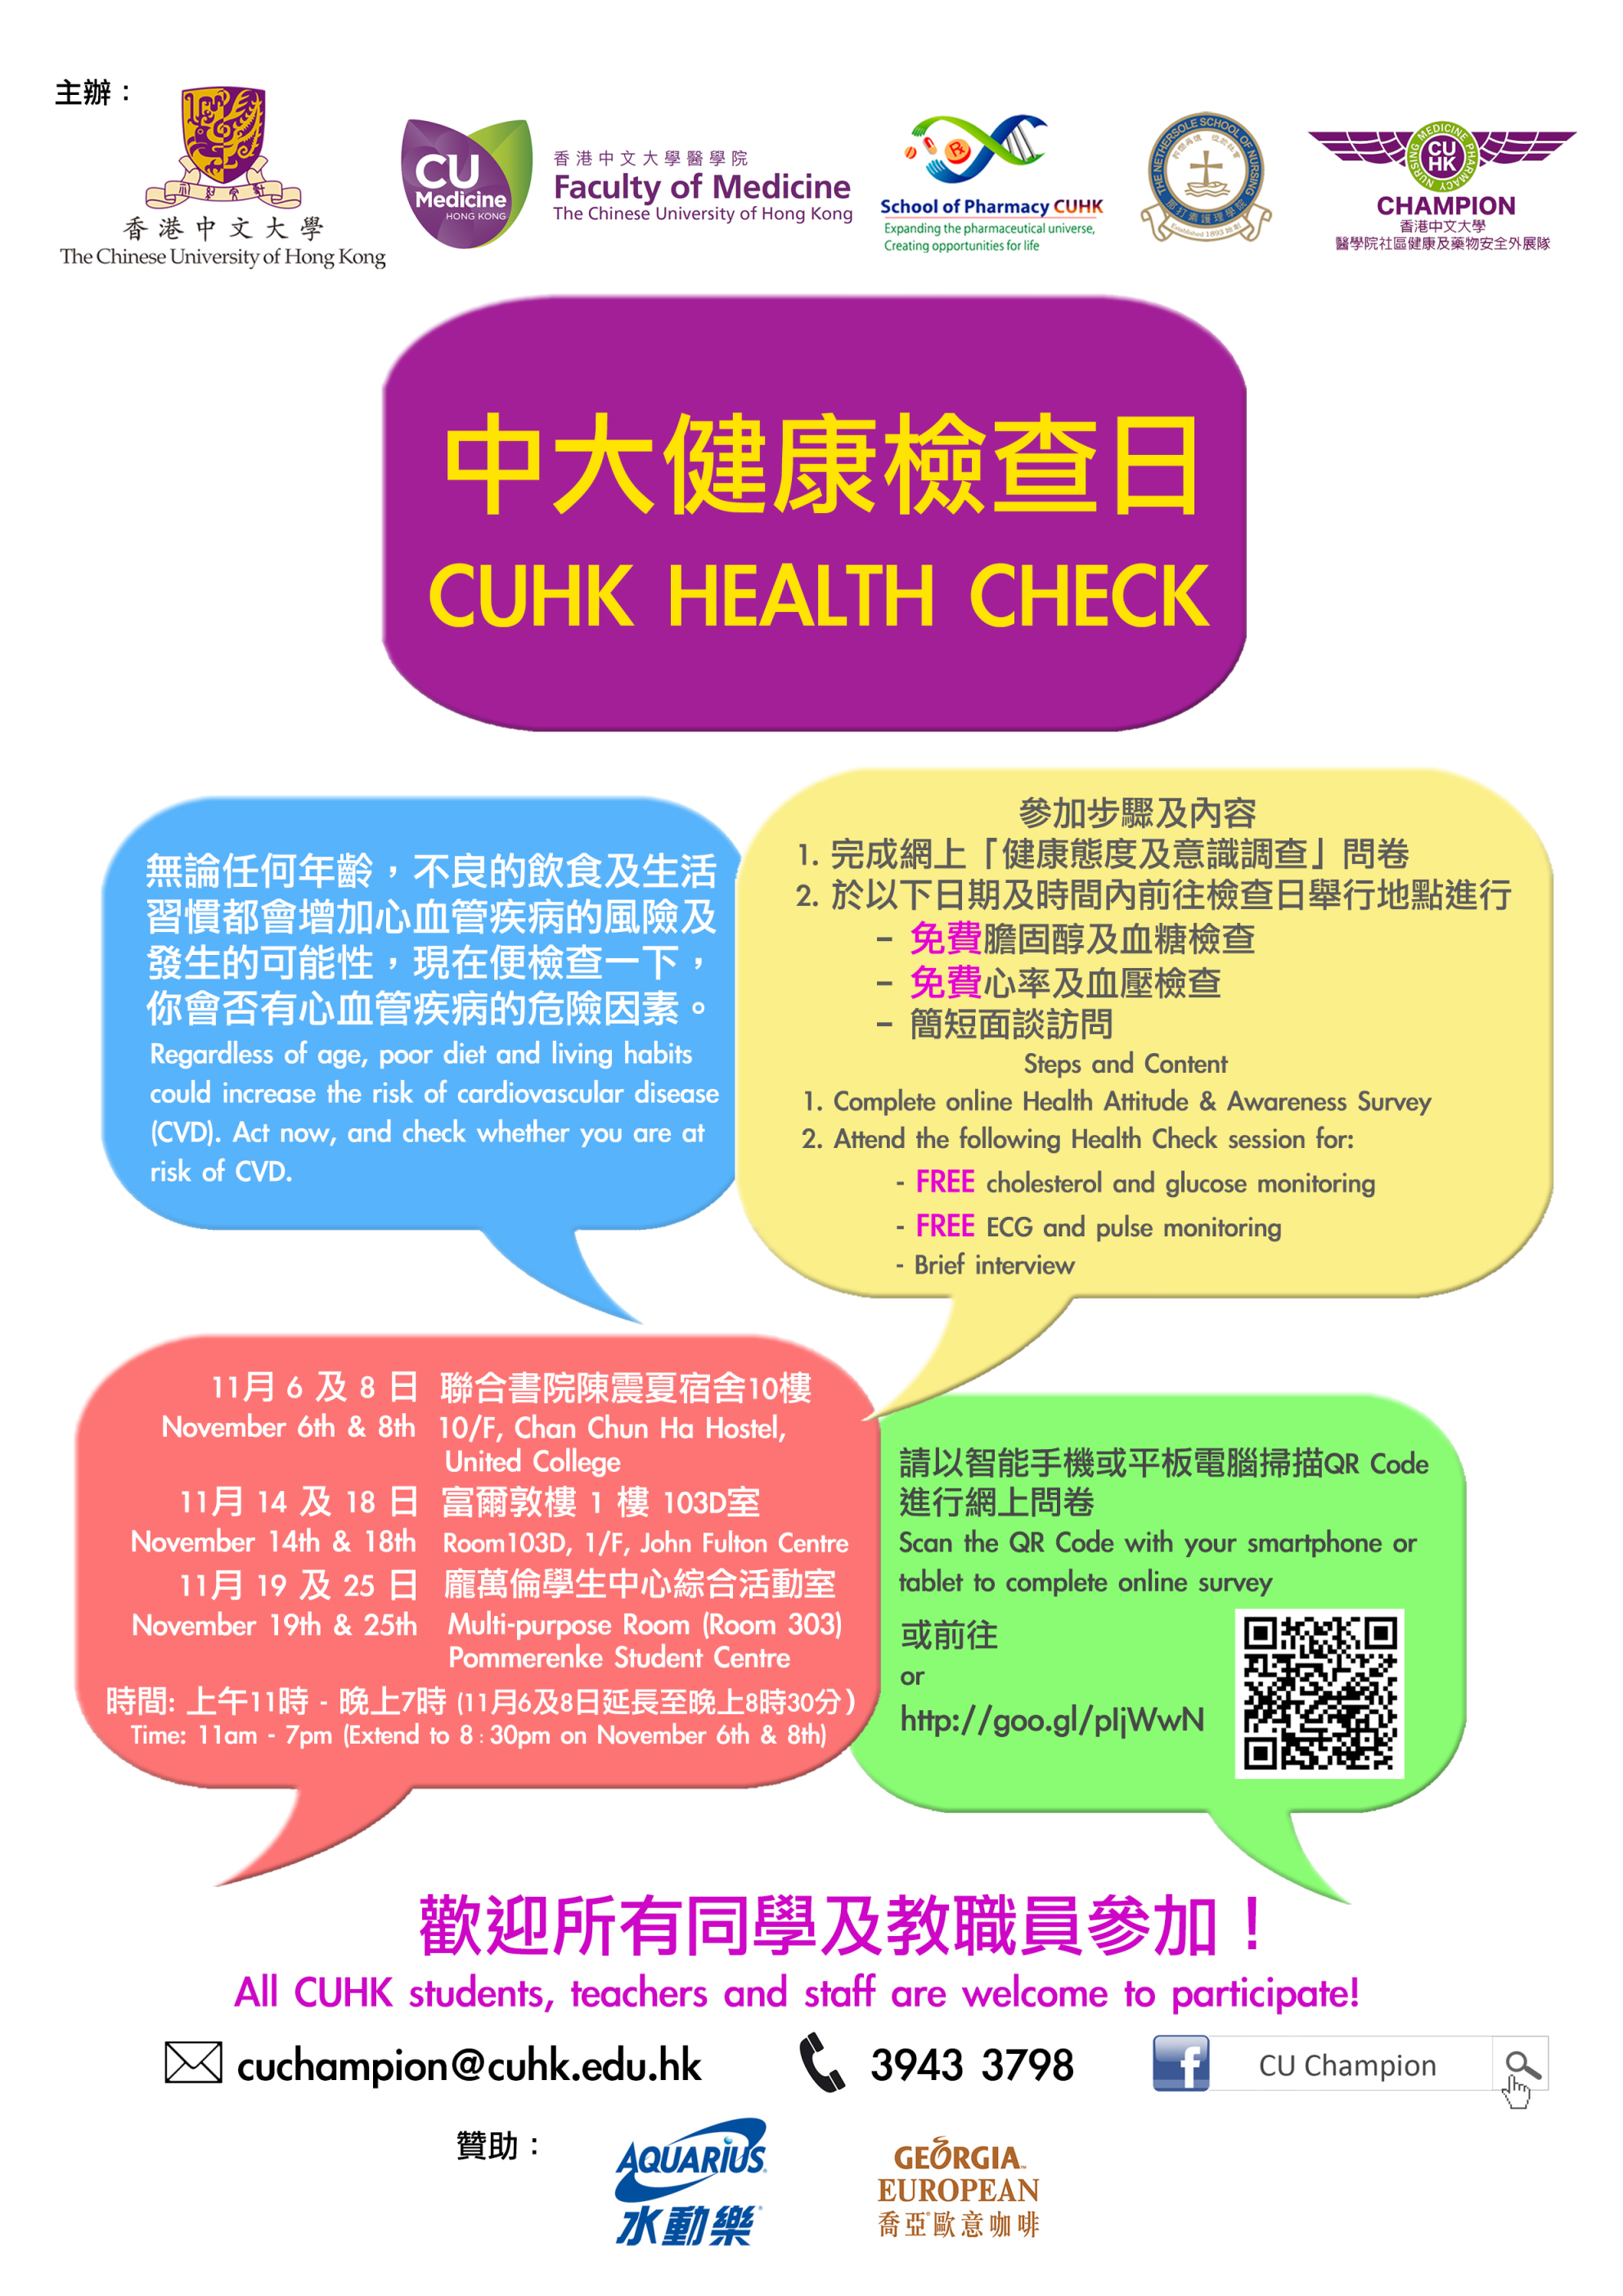 2013 CUHK Health Check